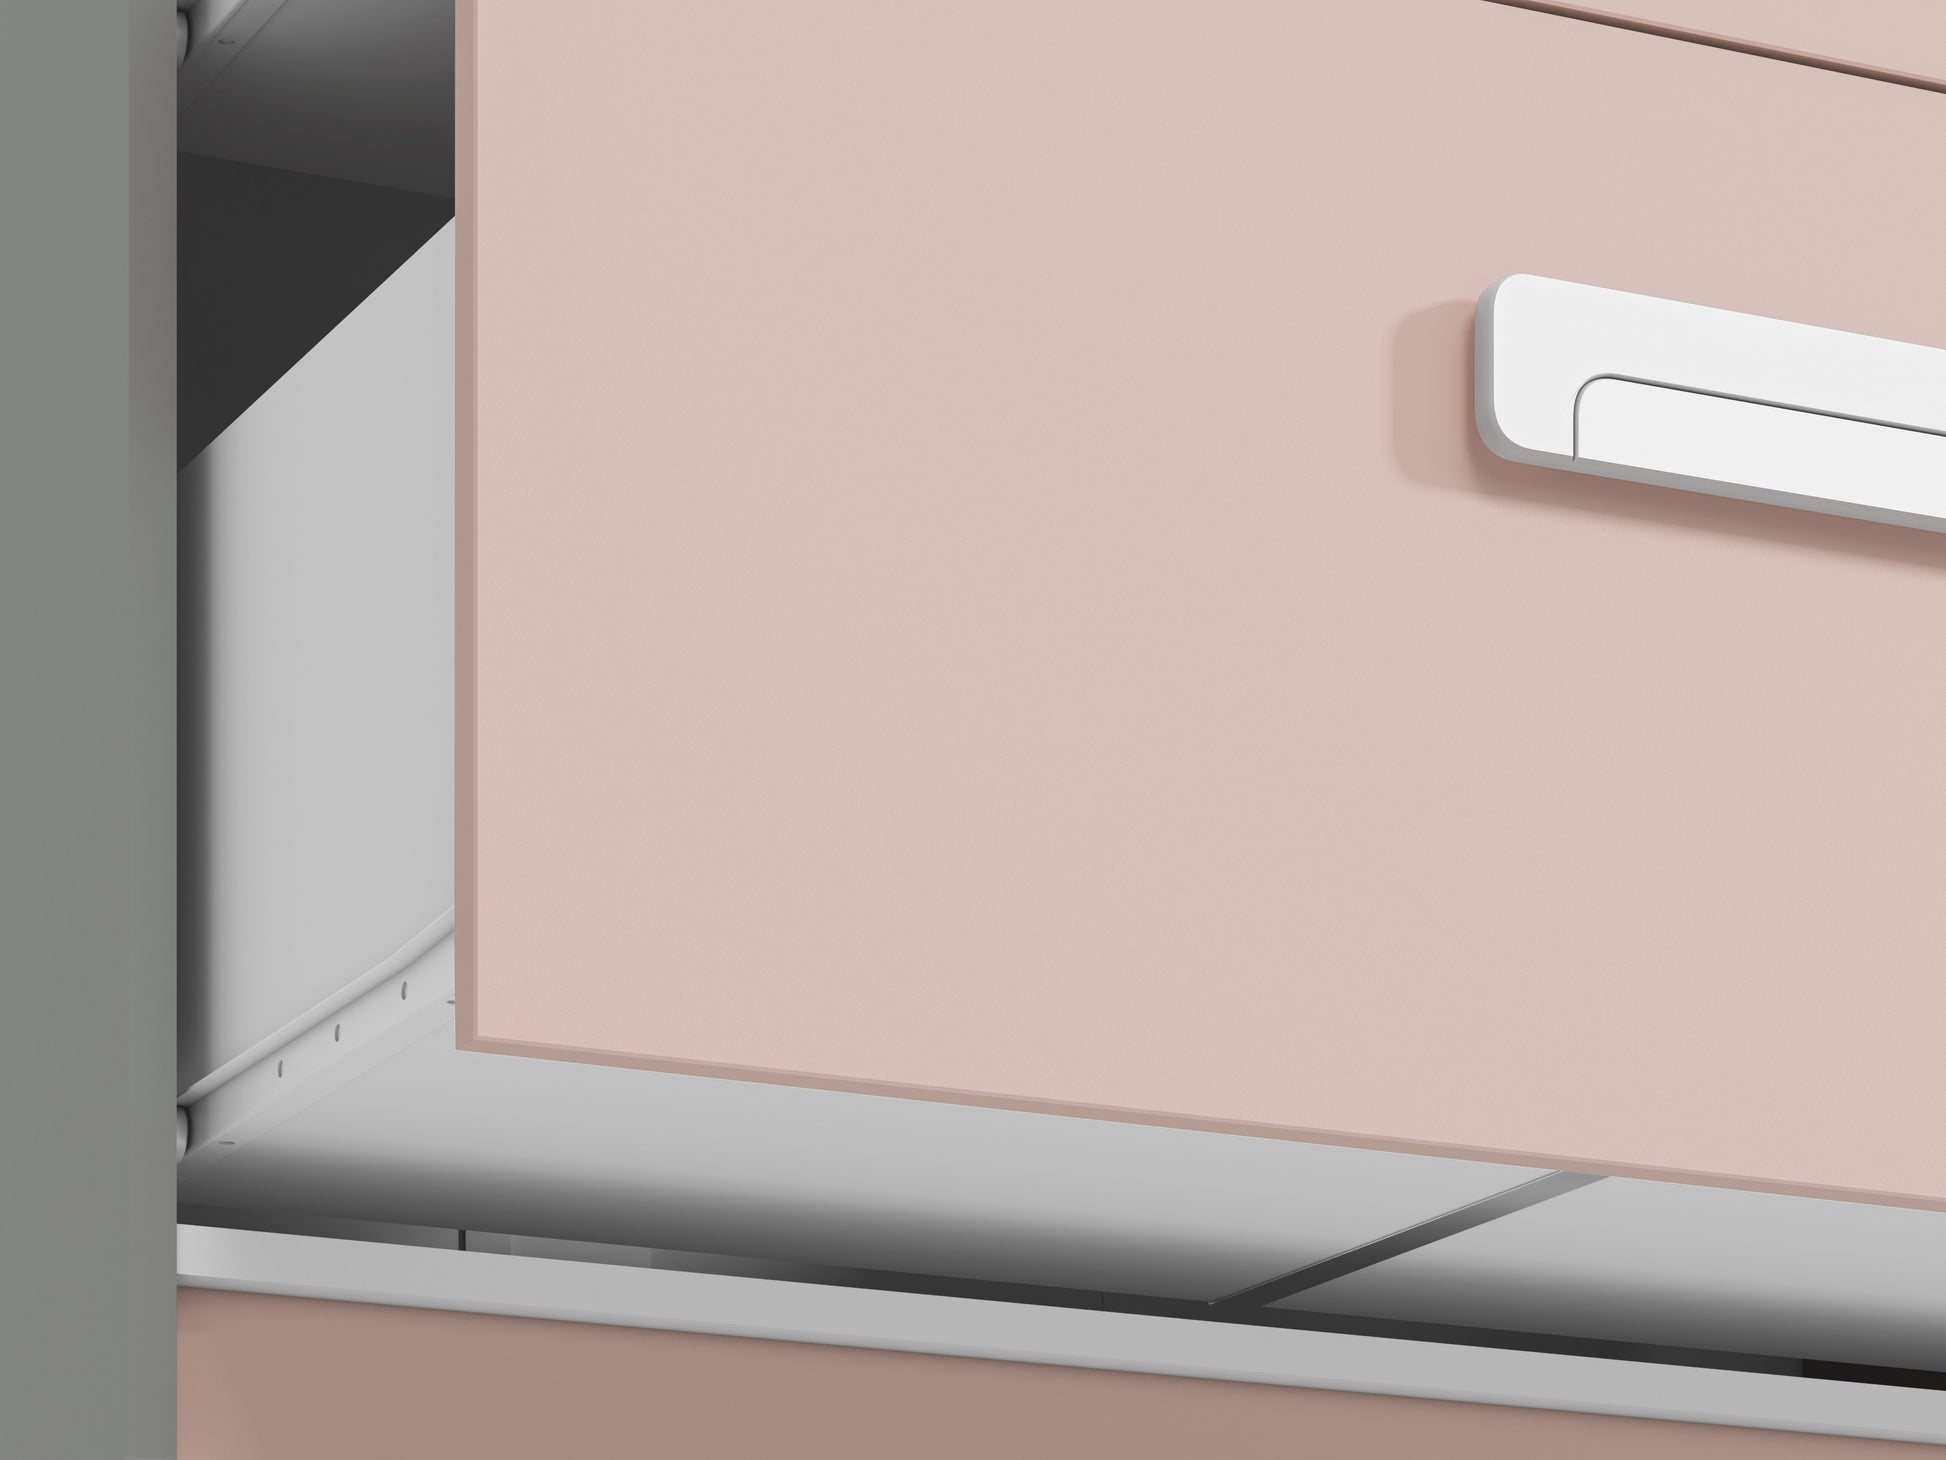 Zbliżenie na prowadnicę i spód szuflady, front mebla oraz część oryginalnego uchwytu.